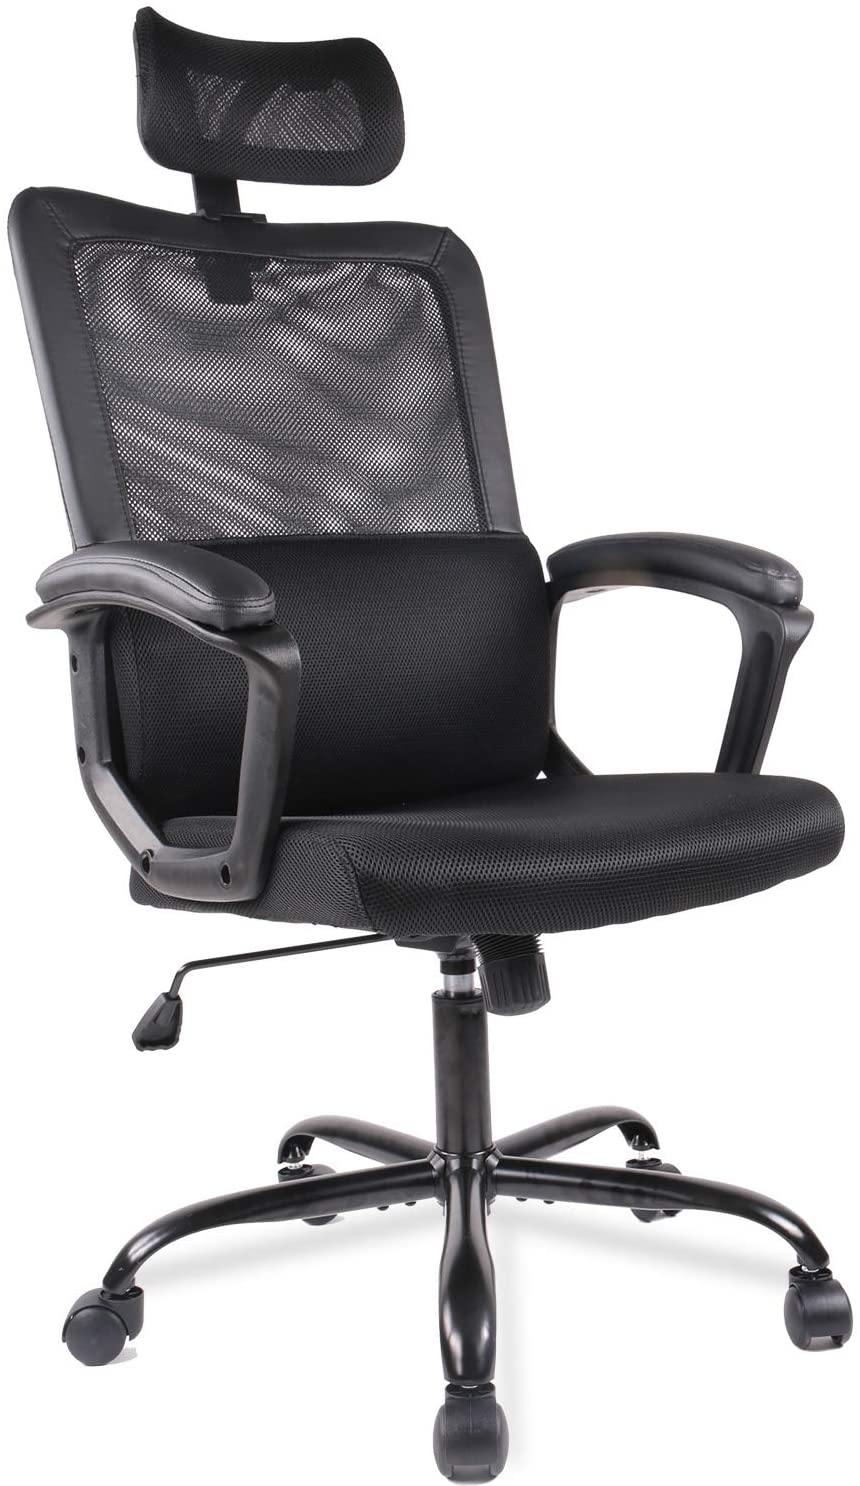 Mesh chair Black Desk Chair Computer Office Chair - Trendha